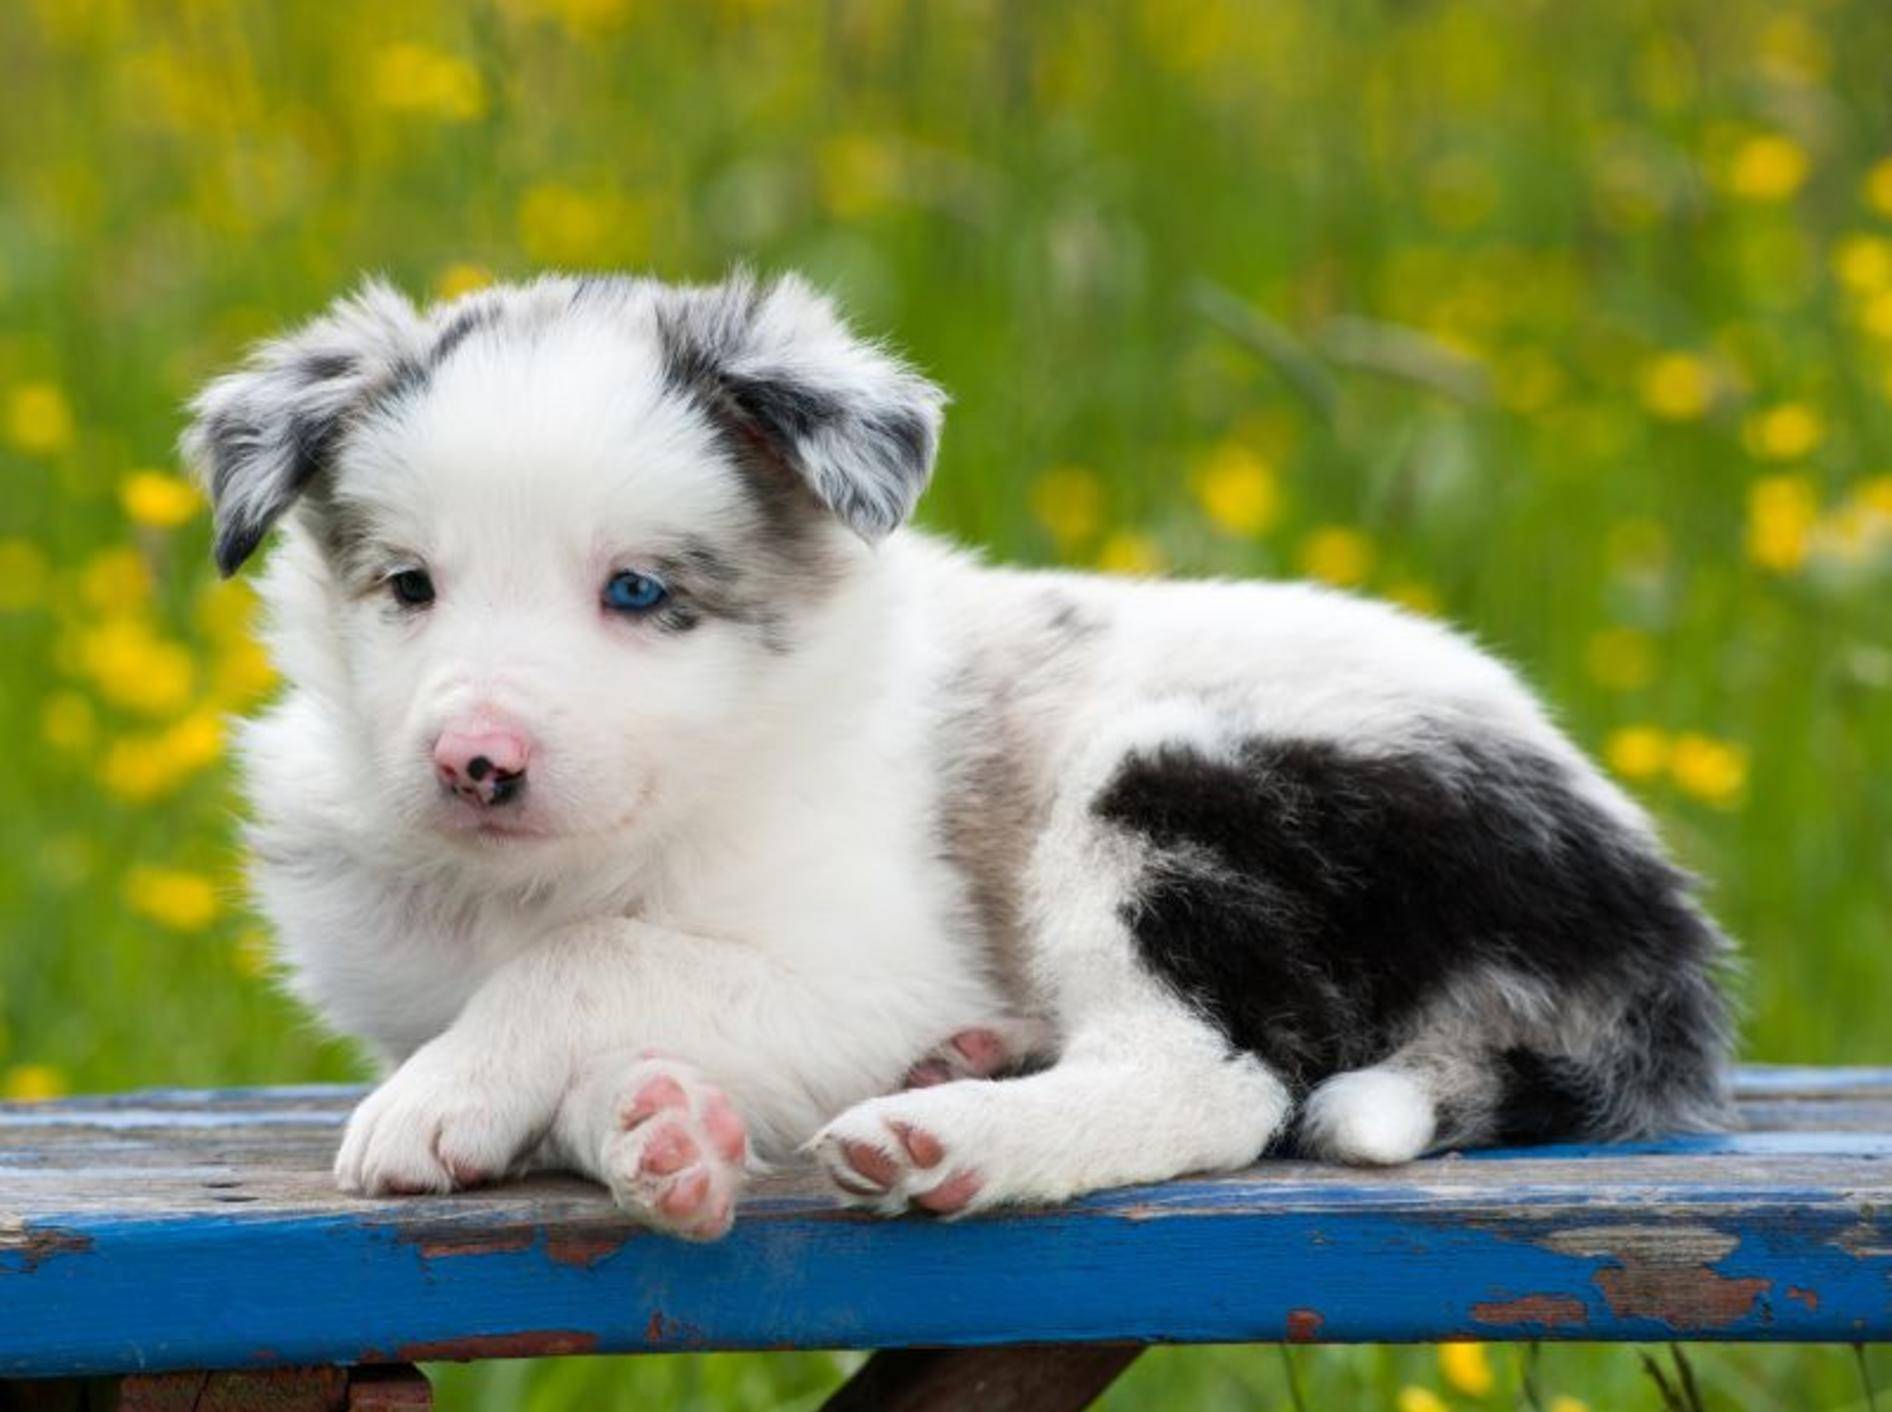 Kleine Pfötchen, blaue Augen, süßer Hundeblick: An diesem Border-Collie-Welpen ist einfach alles süß! – Bild: Shutterstock / Dora Zett